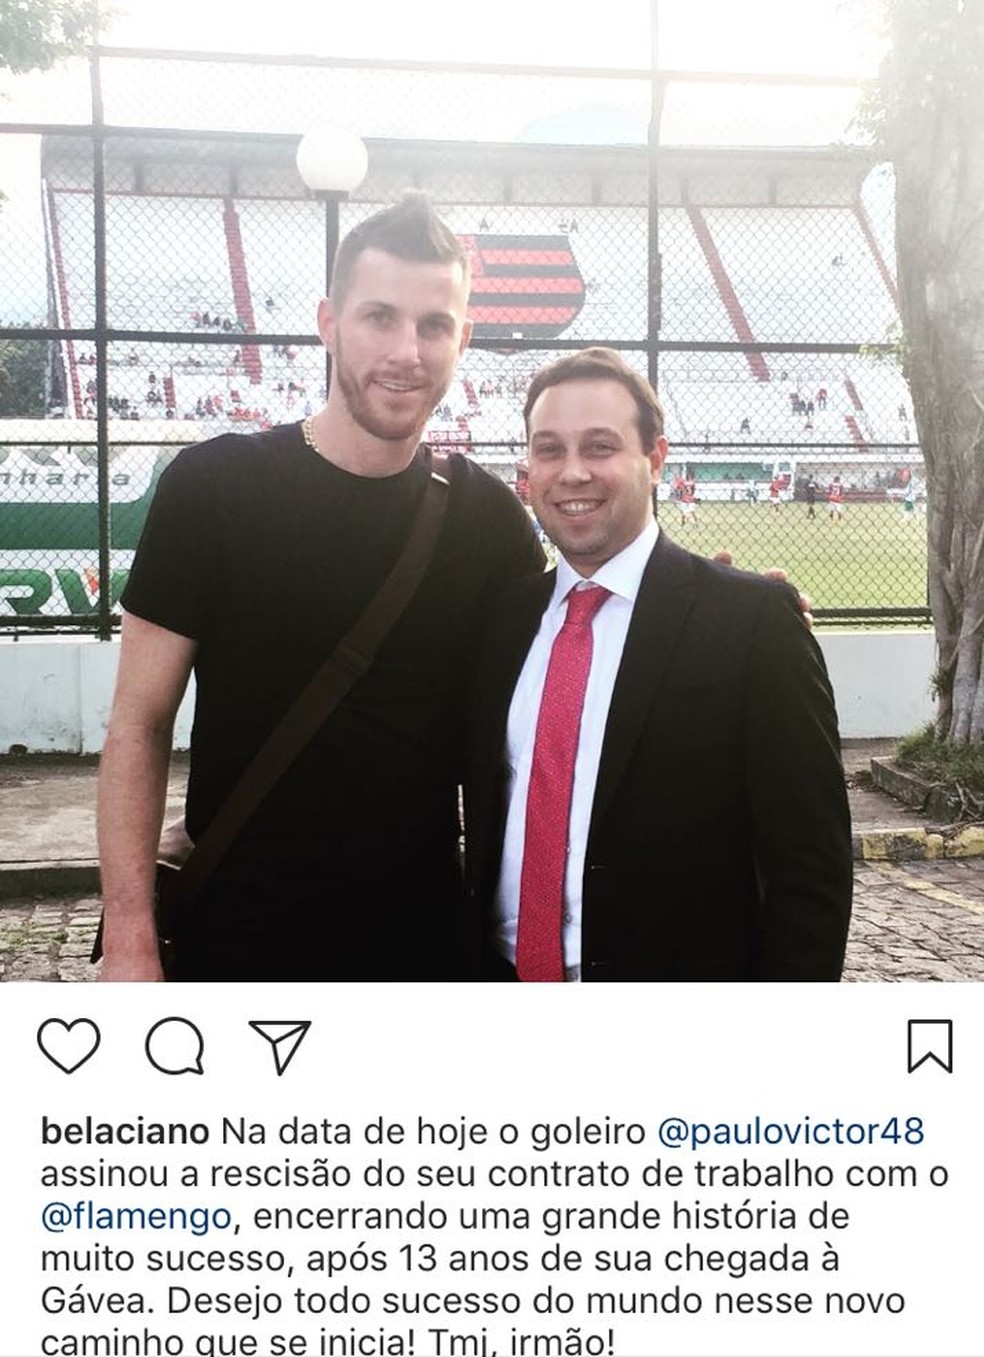 Advogado de Paulo Victor postou foto com ele na Gávea (Foto: Reprodução)